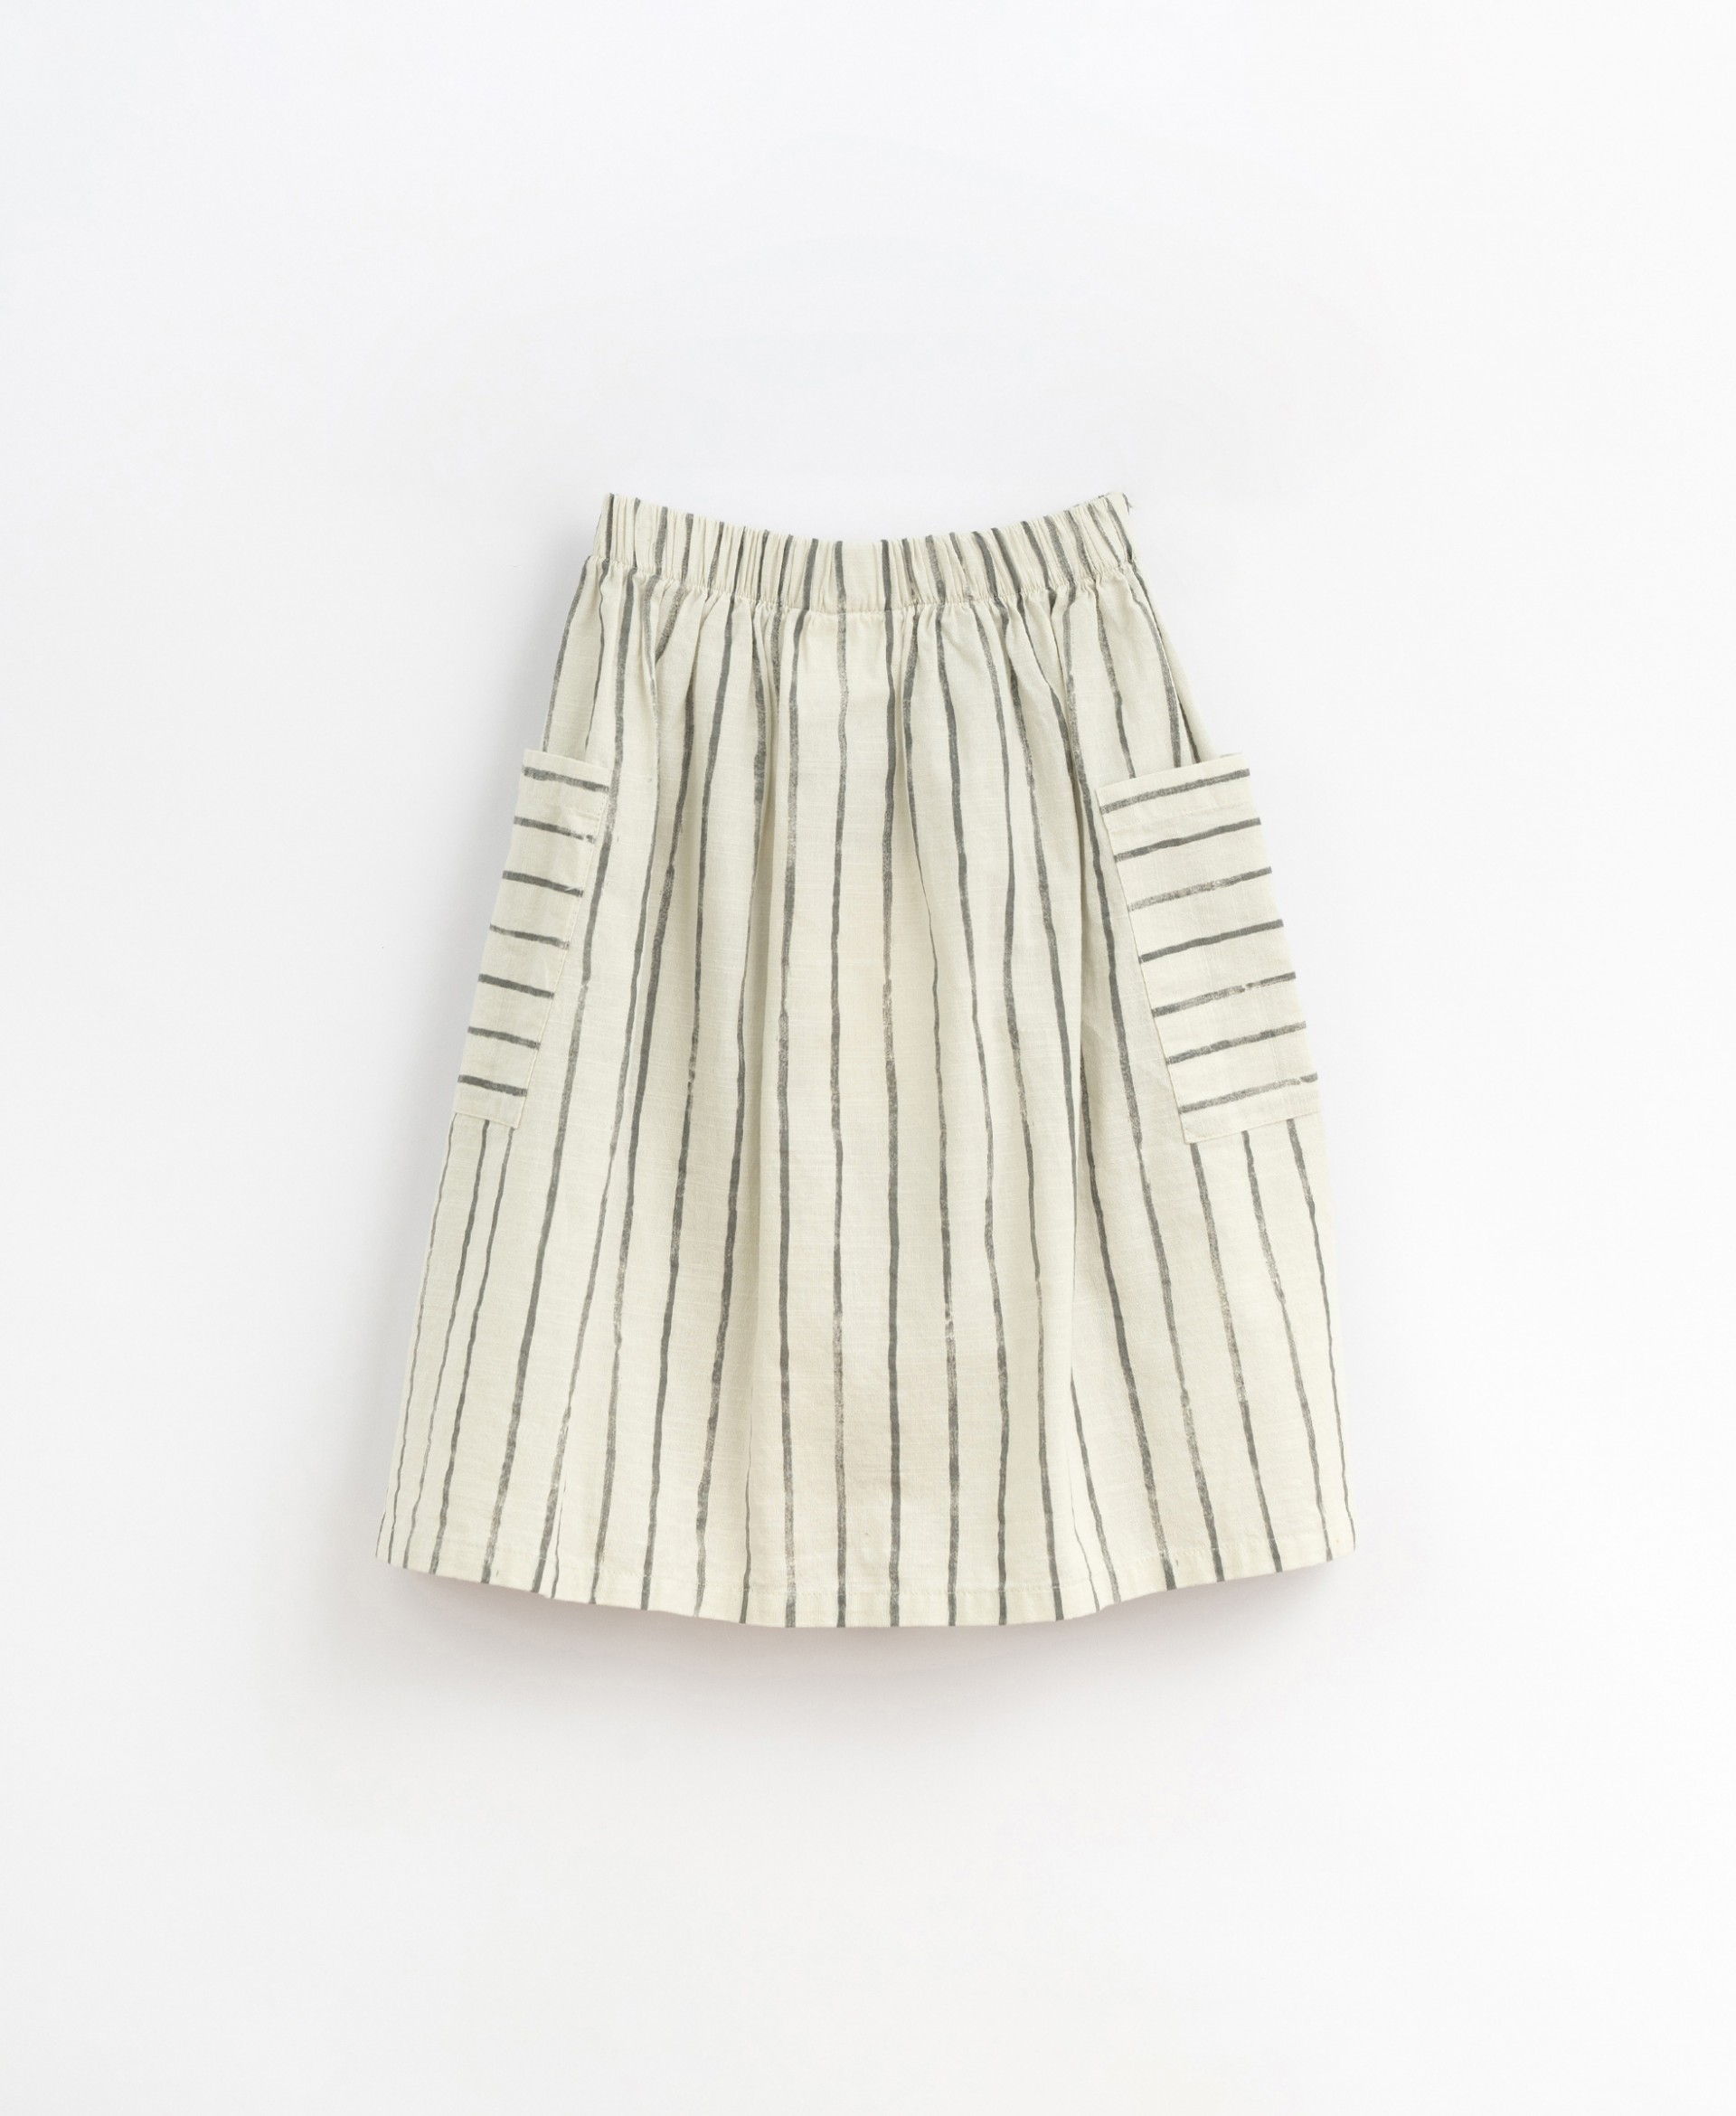 Falda de tela con bolsillos laterales | Basketry